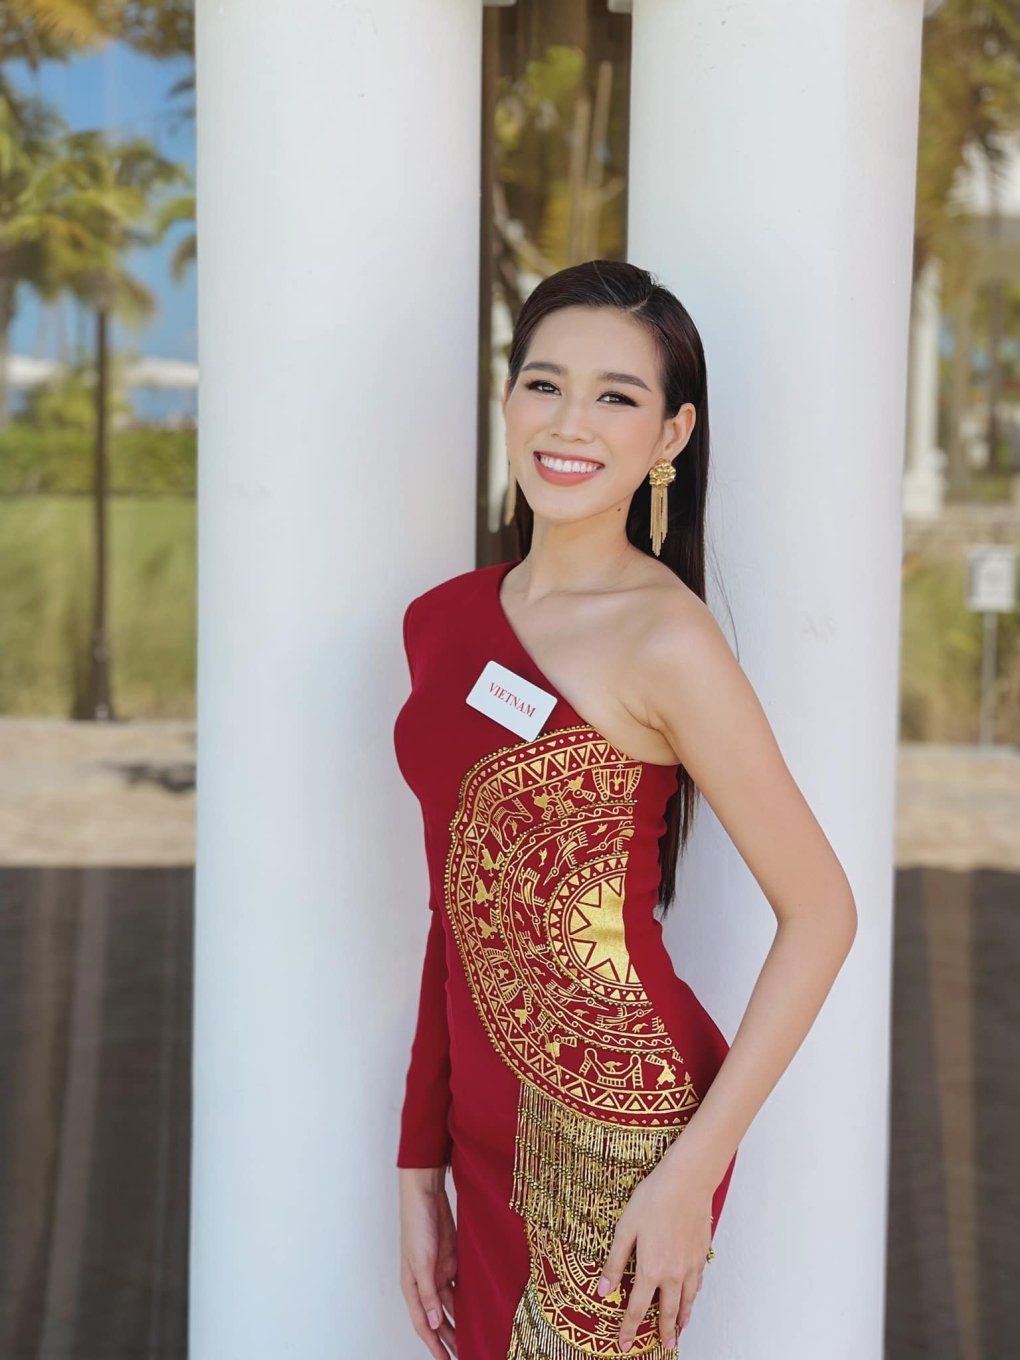 Hiện tại, Hoa hậu Đỗ Thị Hà đang giữ được phong độ ổn định tại Miss World nhờ tinh thần 'chiến binh' cùng sự cố gắng, nỗ lực hết mình